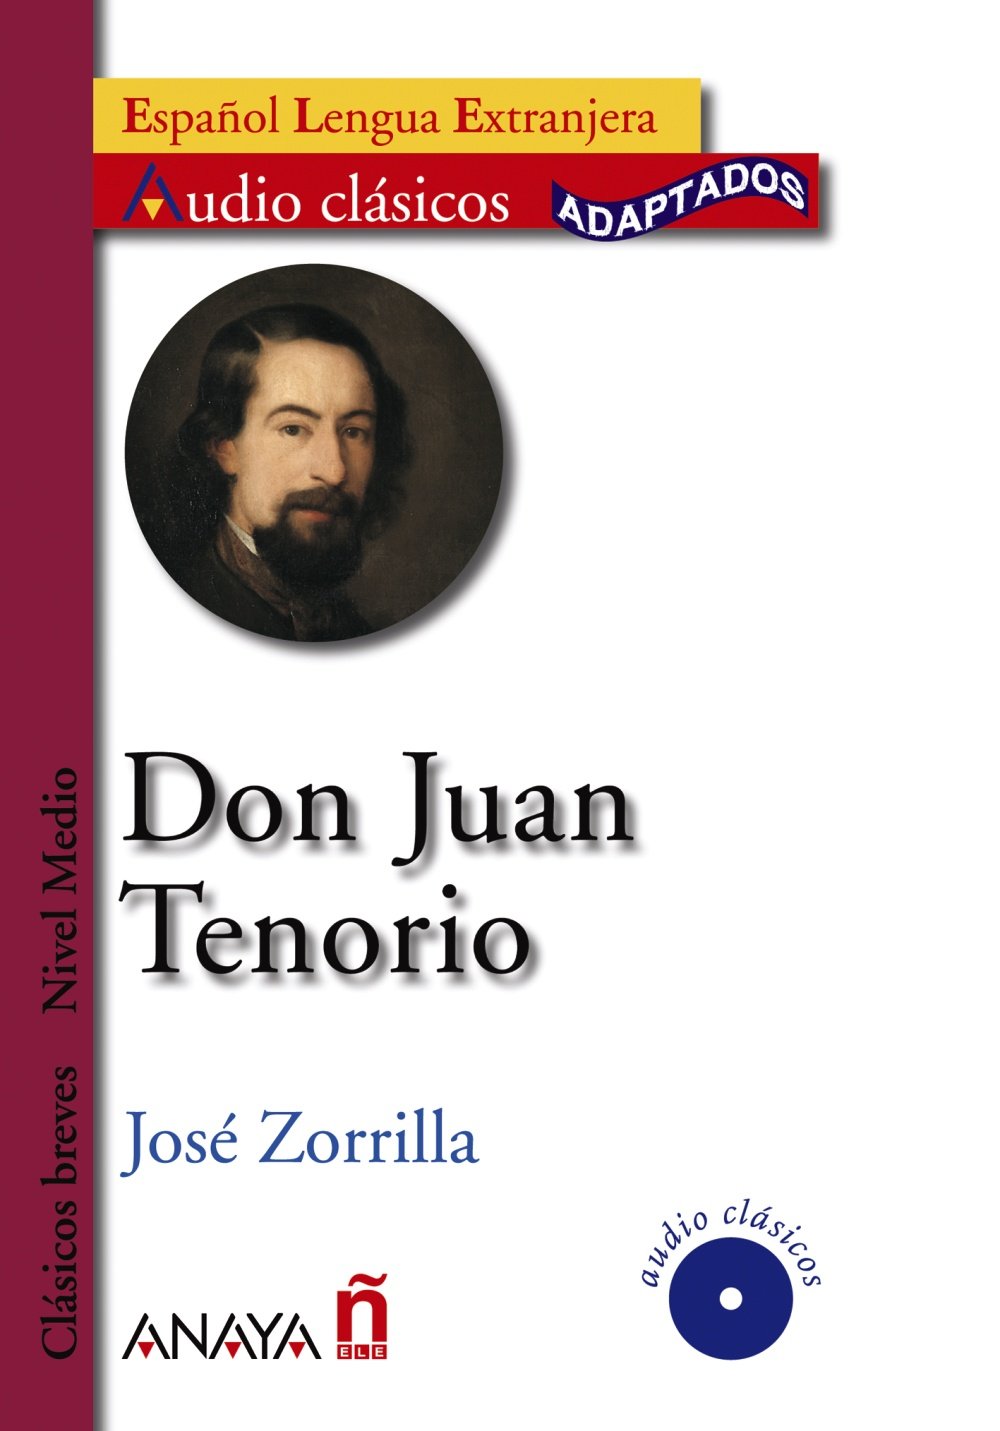 Jose Zorrilla Don Juan Tenorio 